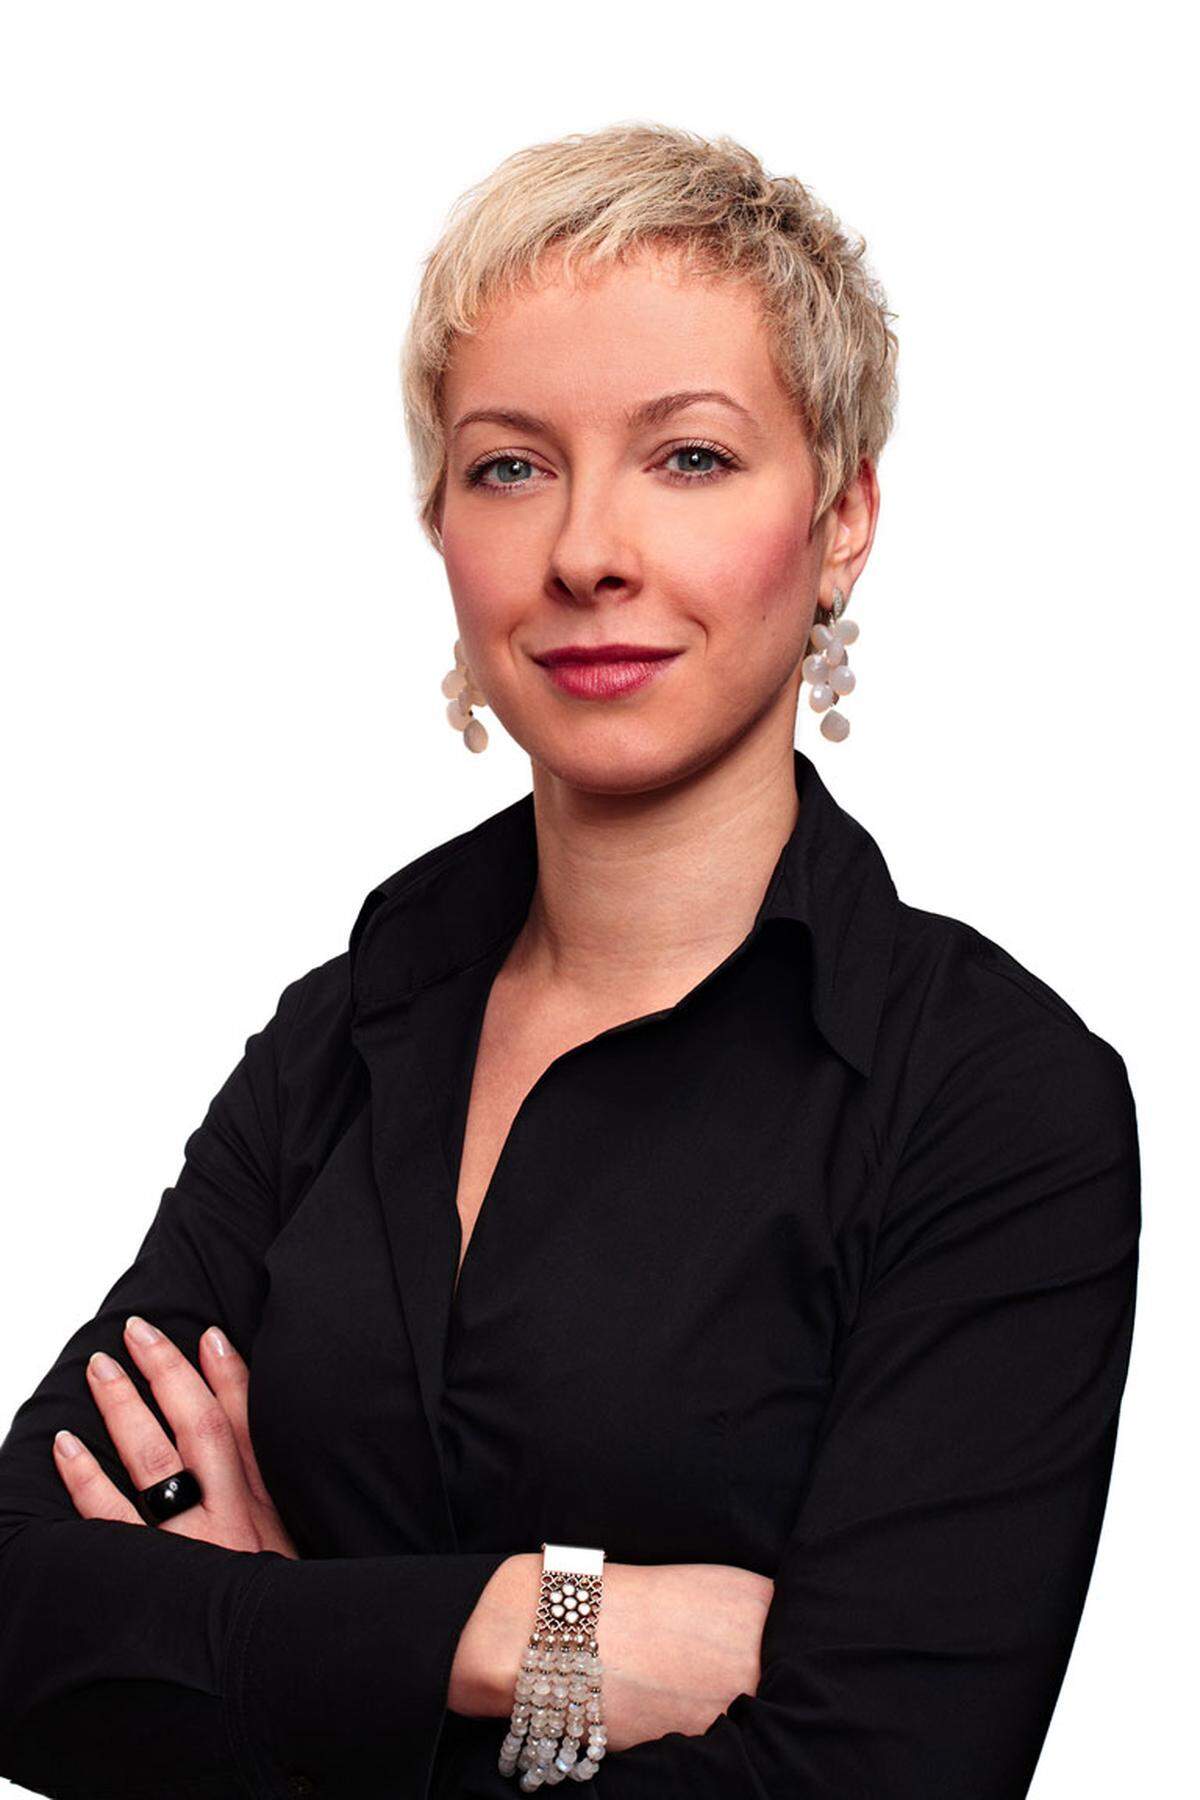 Andrea Potz (32) verstärkt als Rechtsanwältin den Fachbereich Arbeitsrecht der internationalen Anwaltssozietät CMS Reich-Rohrwig Hainz. Sie ist vor allem auf europäisches Arbeitsrecht und Gleichbehandlungsrecht spezialisiert.